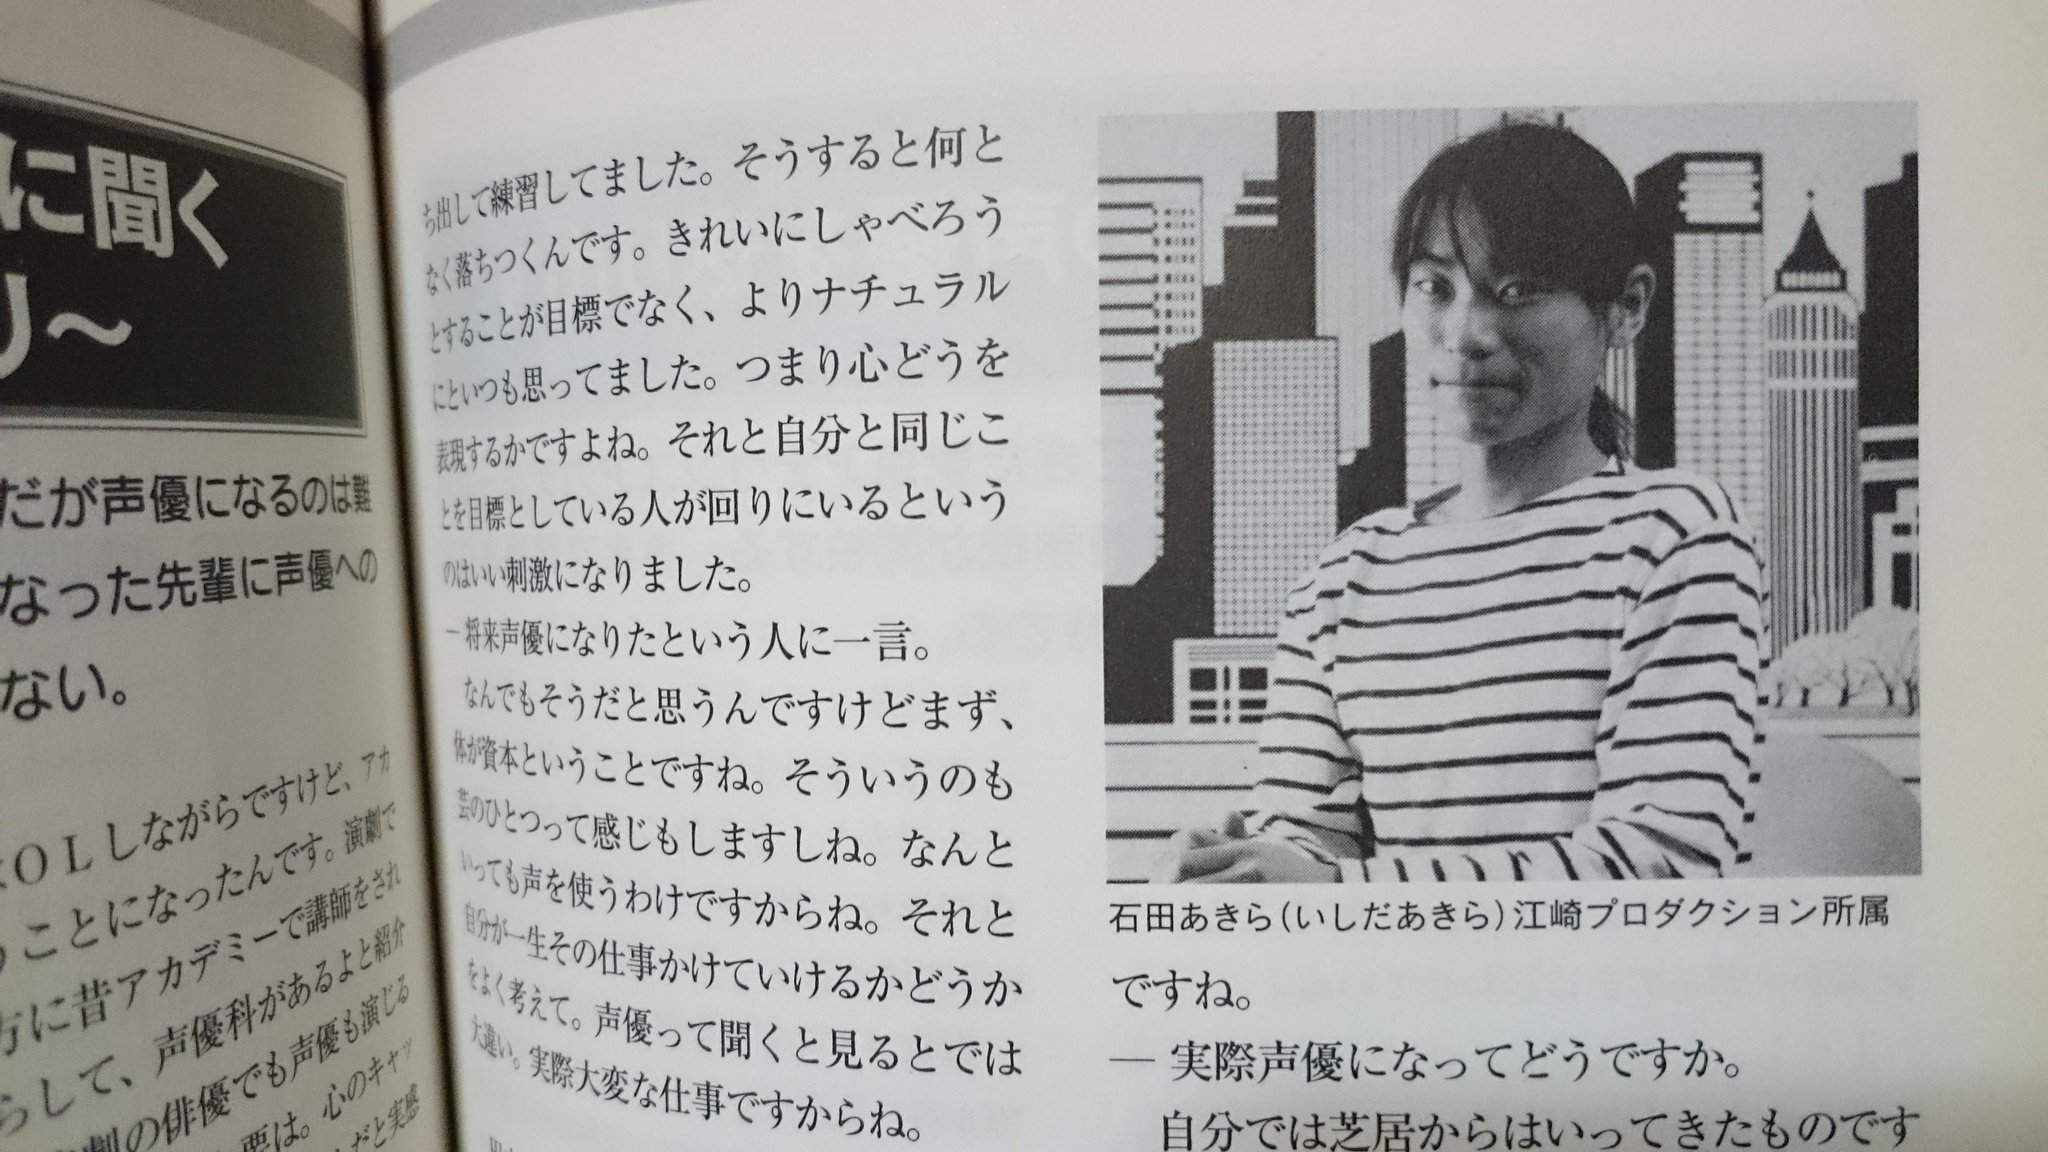 Ichi インタビューも載ってるロン毛時代の石田彰さん てか 石田さんの宣材写真可愛いな こんな笑顔の石田さん見たことないぞ